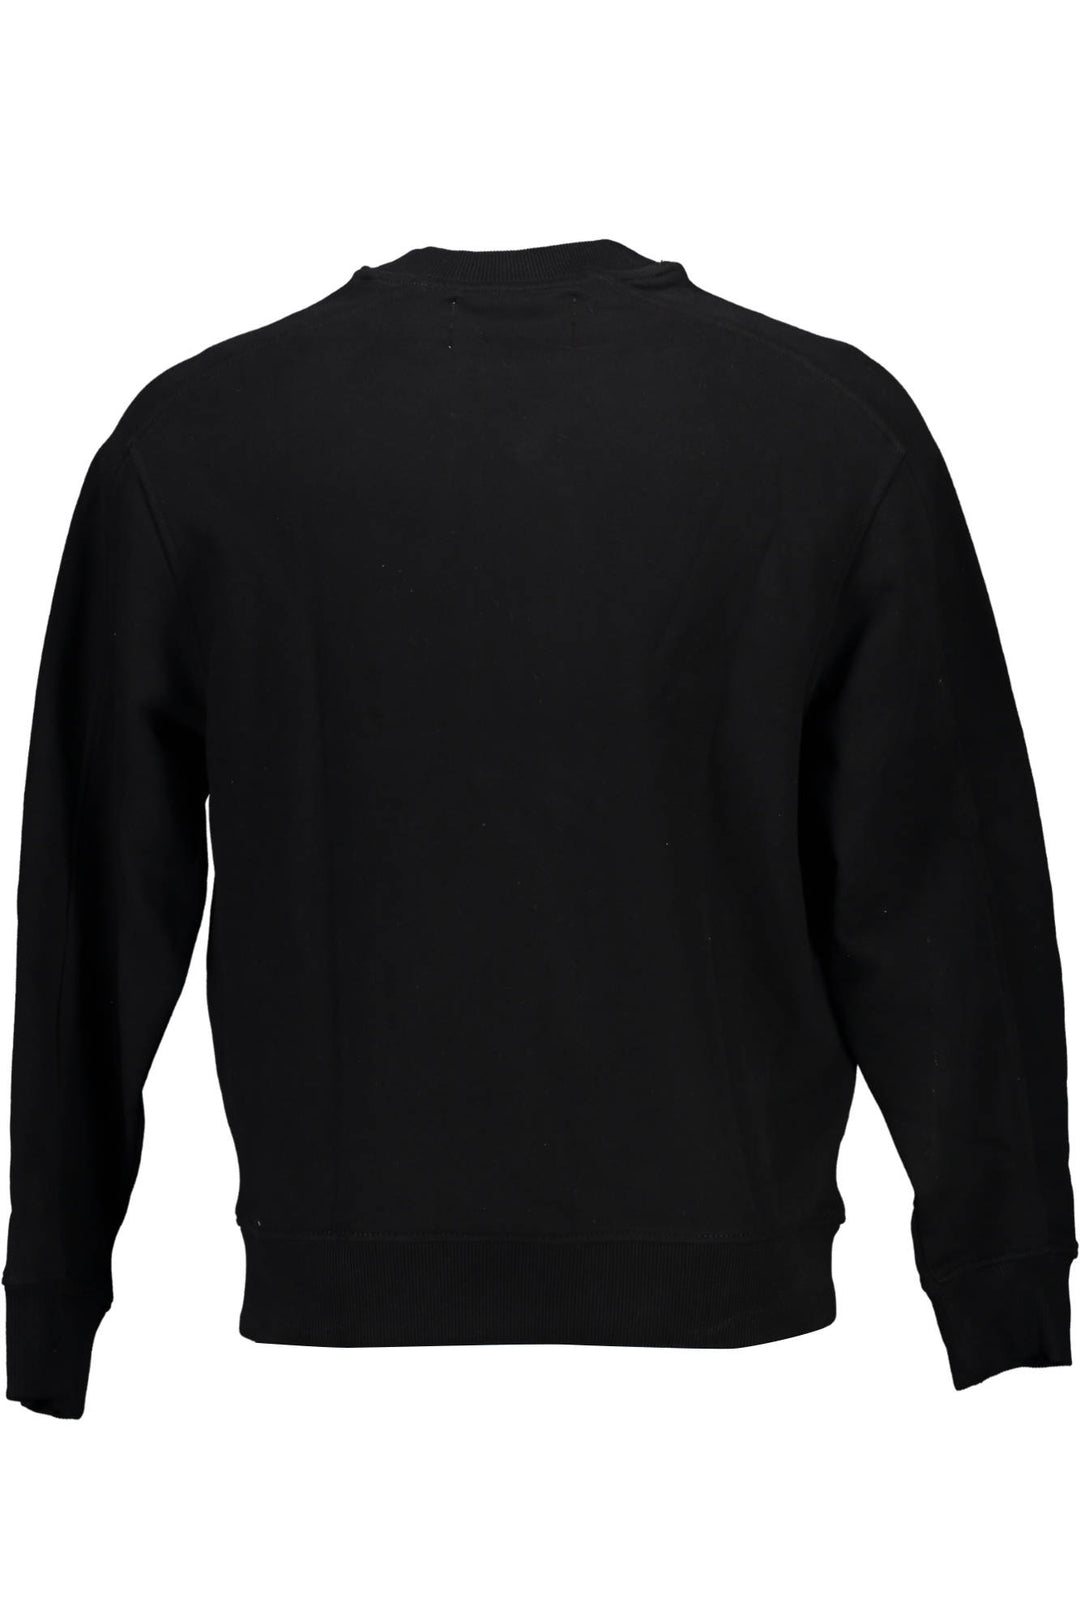 CALVIN KLEIN Herren Pullover Sweatshirt Shirt Oberteil mit Rundhalsausschnitt, langärmlig